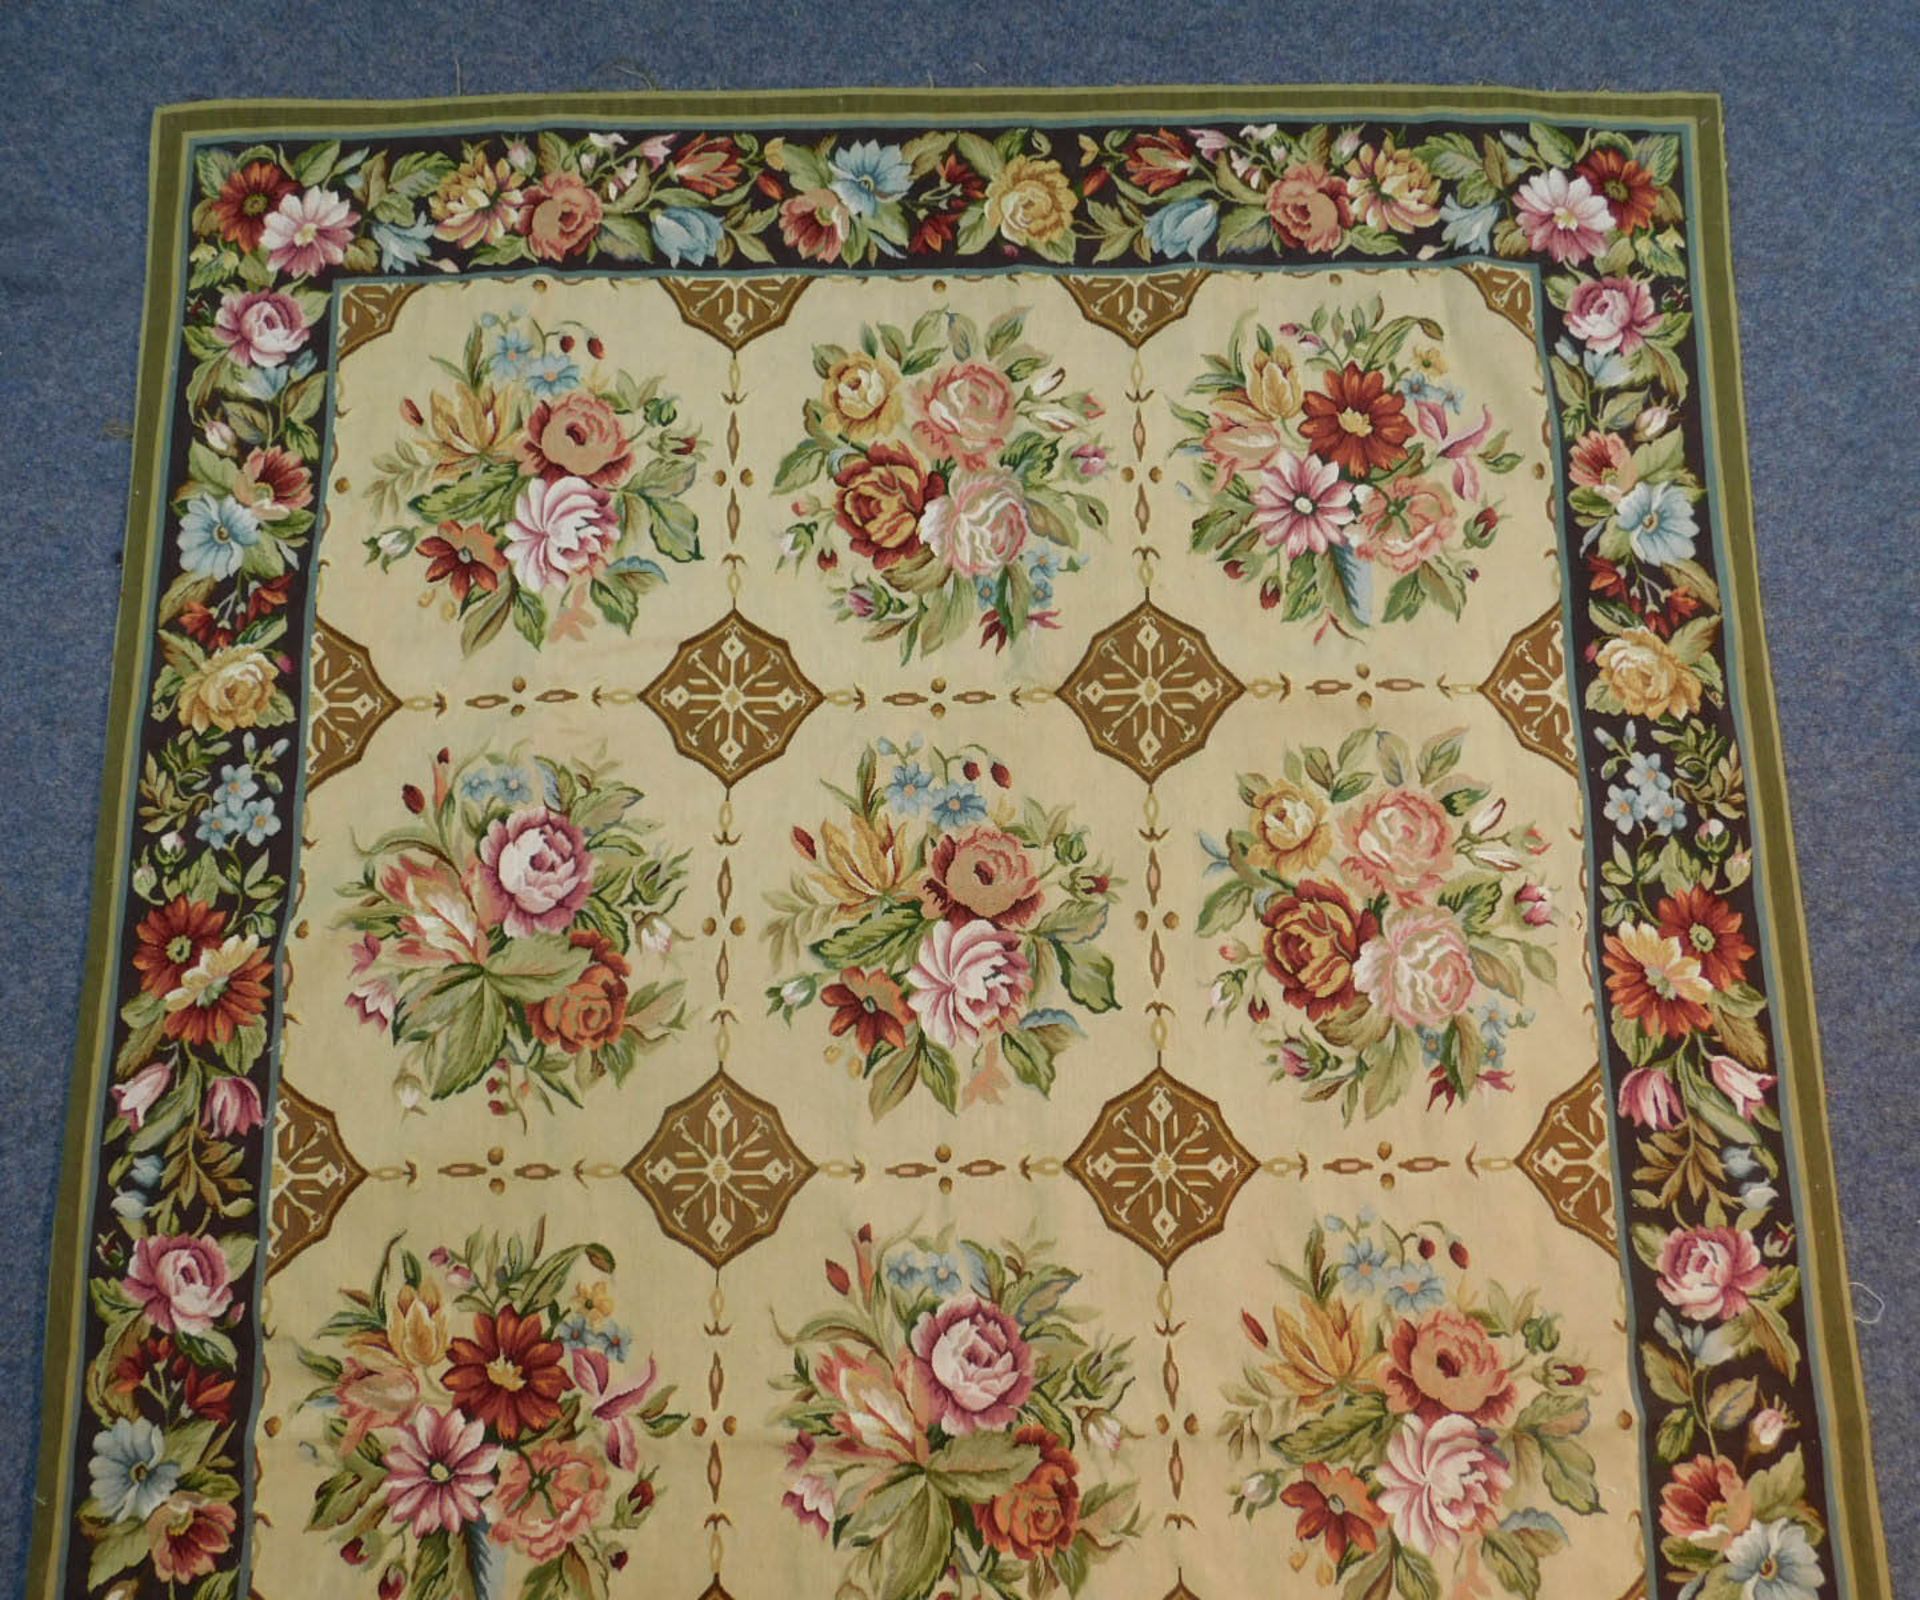 Teppich in Aubusson Technik und Louis XVI Stil. - Bild 3 aus 6